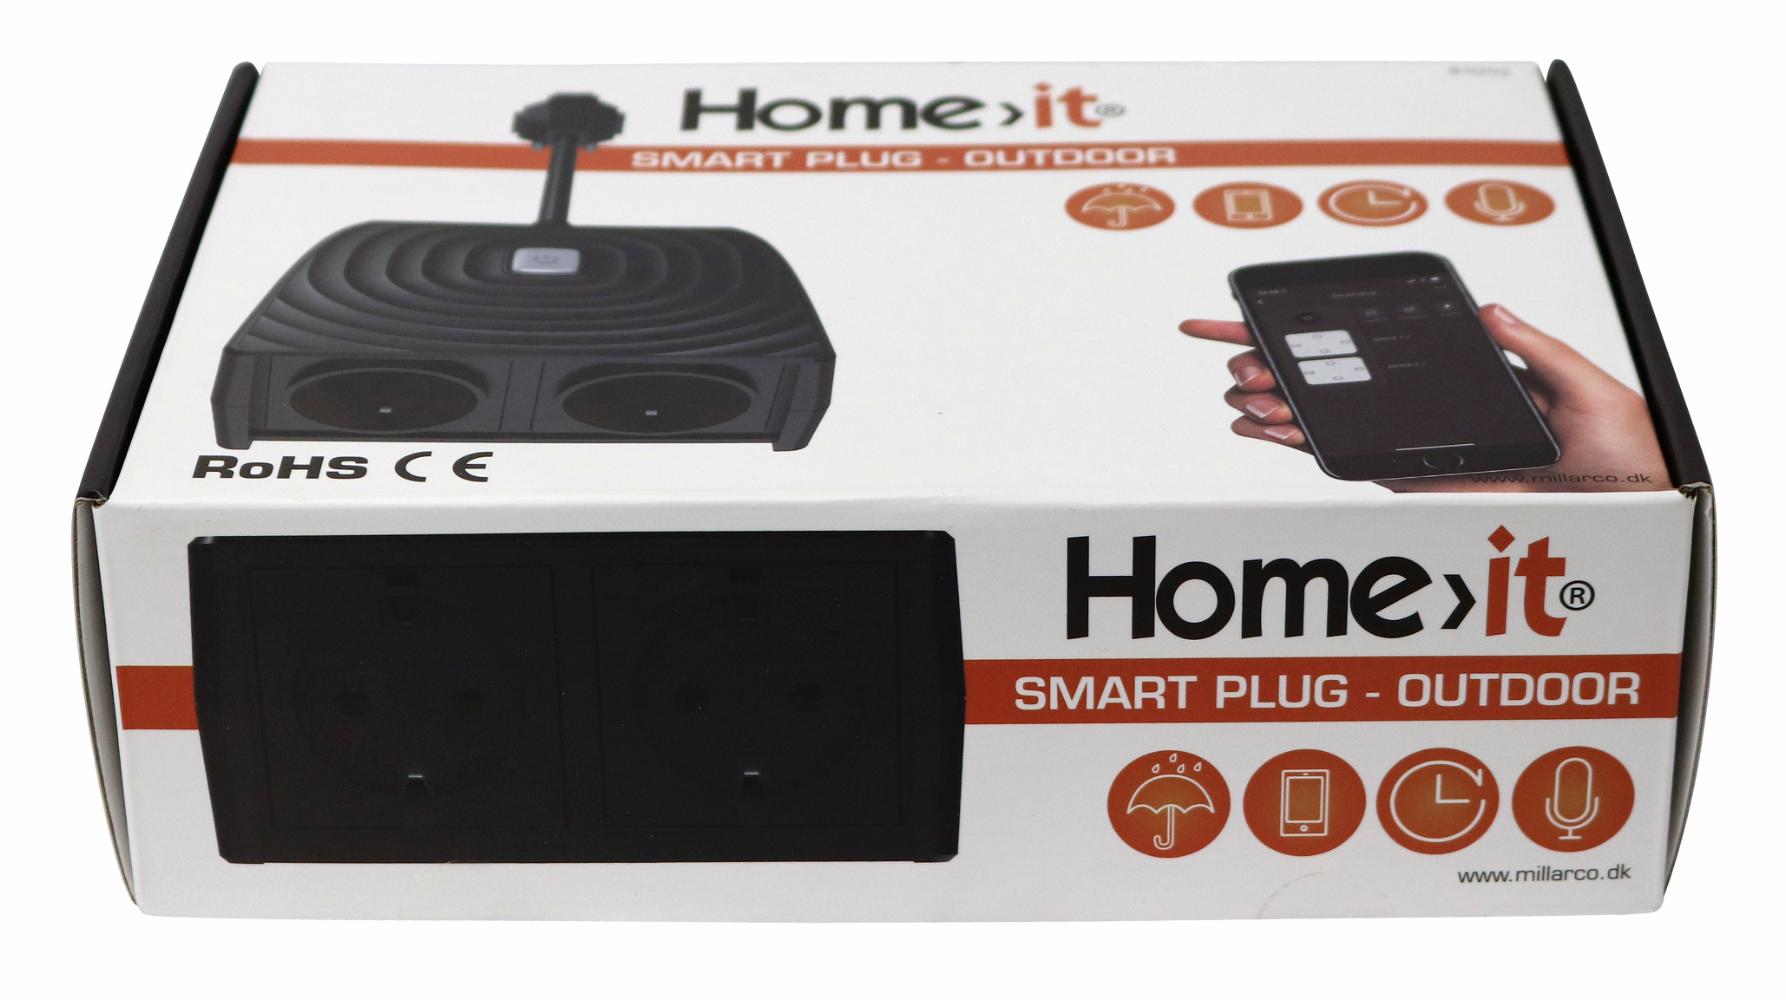 Home>it® Smartplug Twin til brug